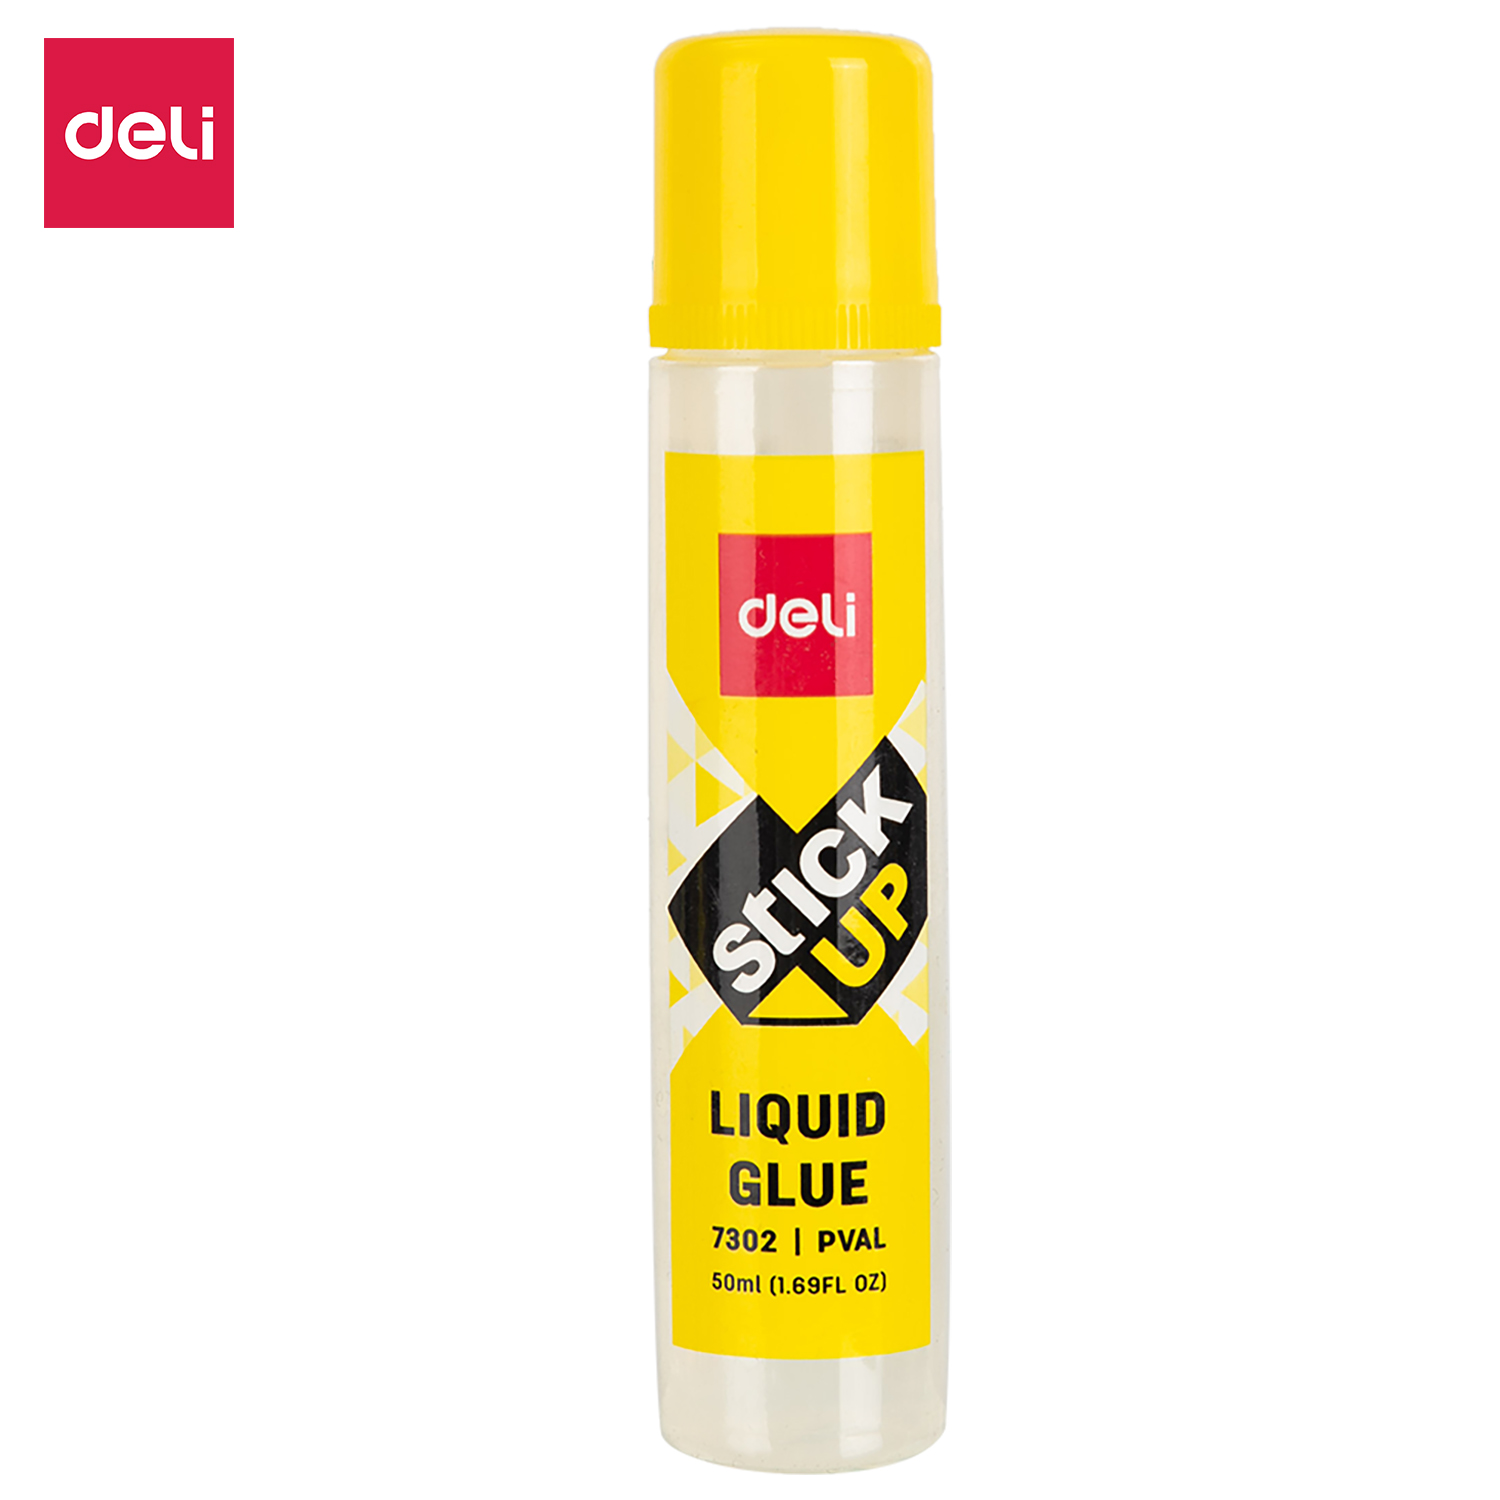 Deli-E7302 Liquid Glue